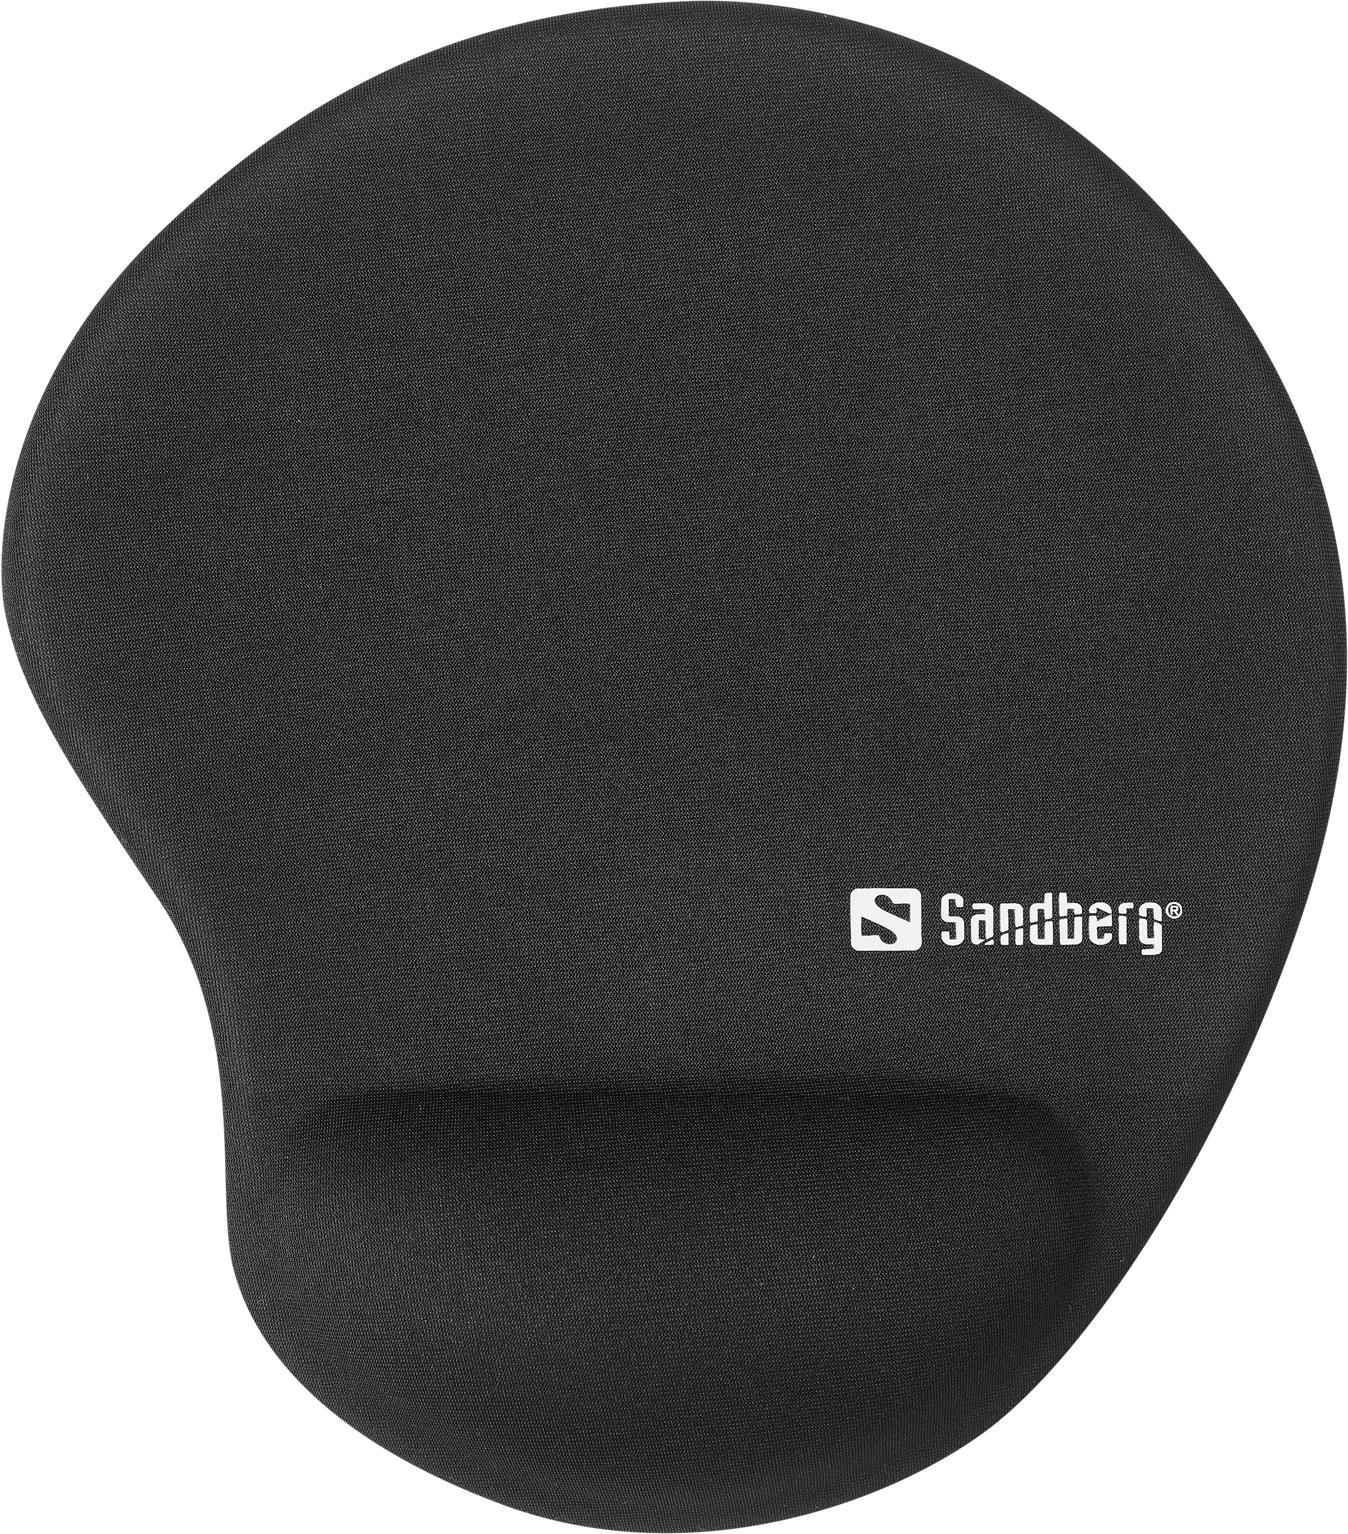 Sandberg Mauspad mit Handgelenkpolsterkissen (820-98)